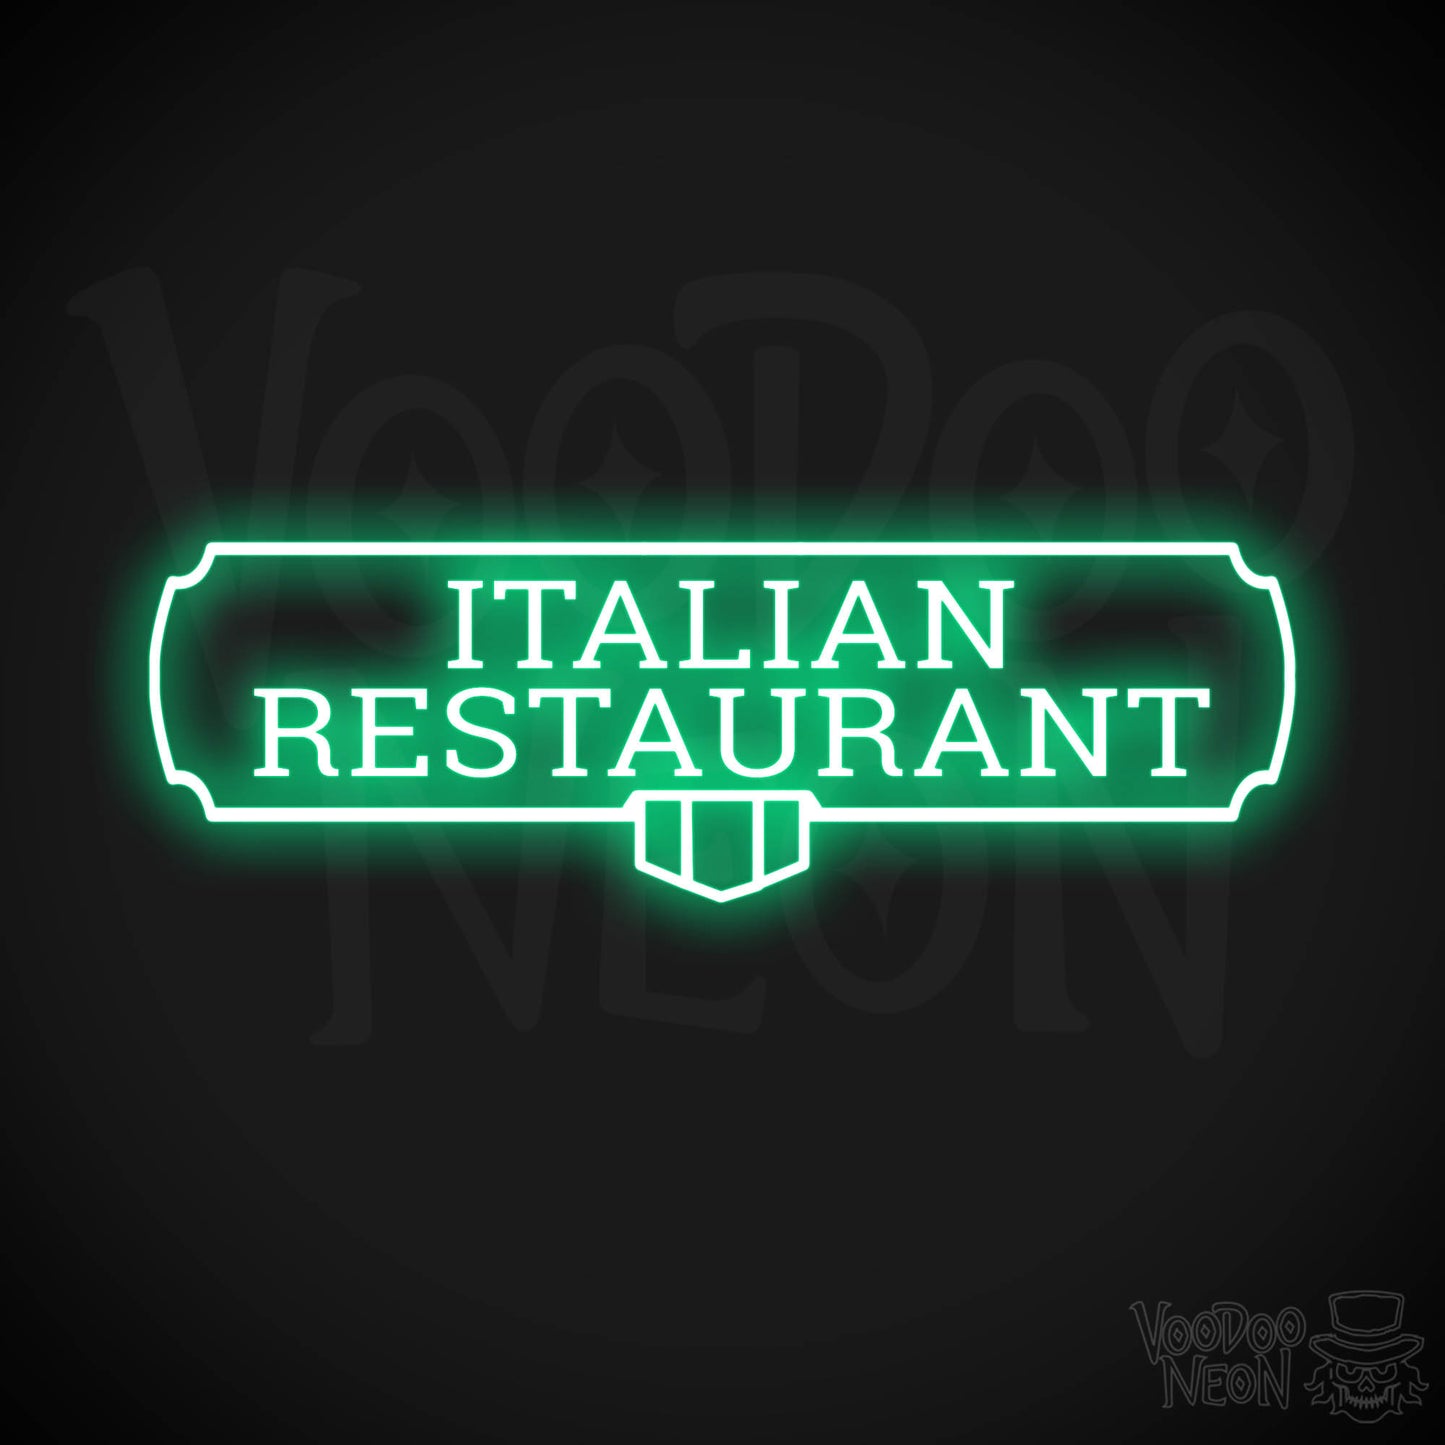 Italian Restaurant LED Neon - Green